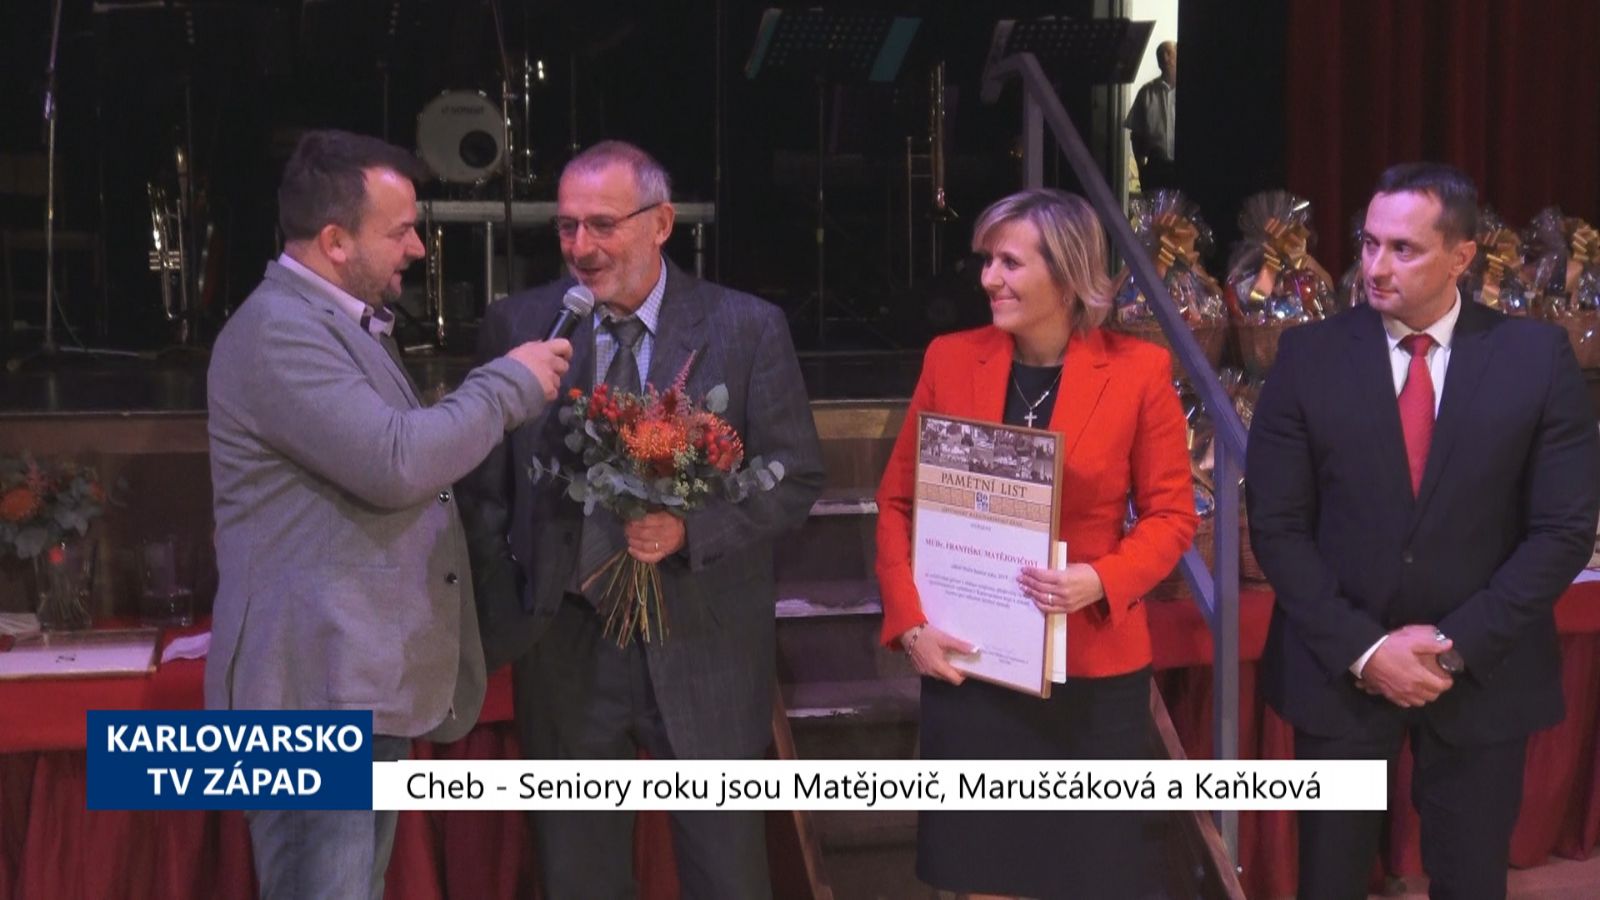 Cheb: Seniory roku jsou Matějovič, Maruščáková a Kaňková (TV Západ)